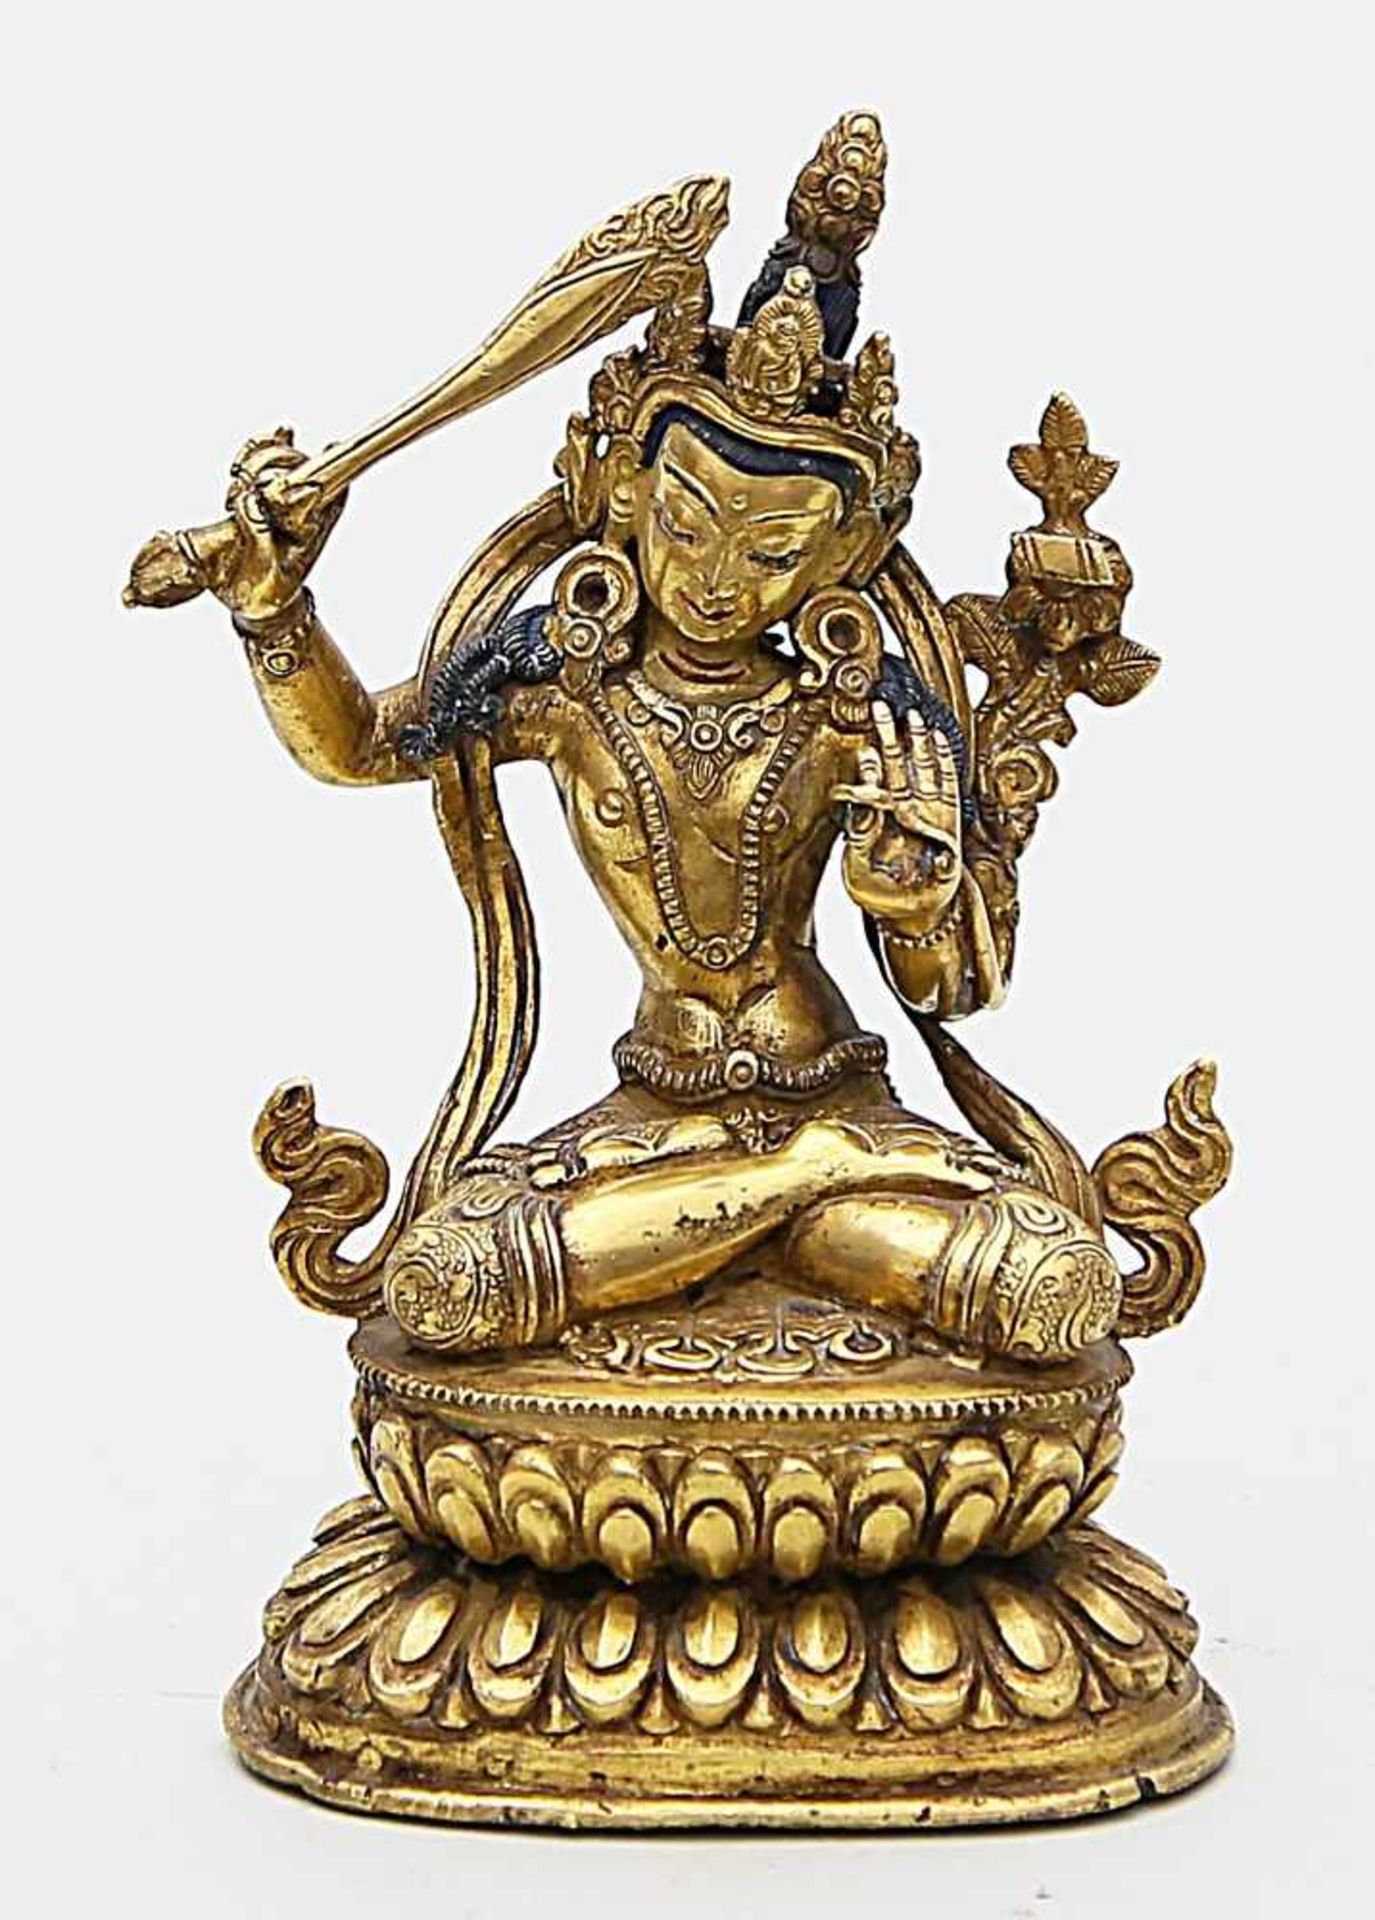 Skulptur des "Manjusri".Feuervergoldete Bronze, partiell geschwärzt. Die im Diamantsitz auf